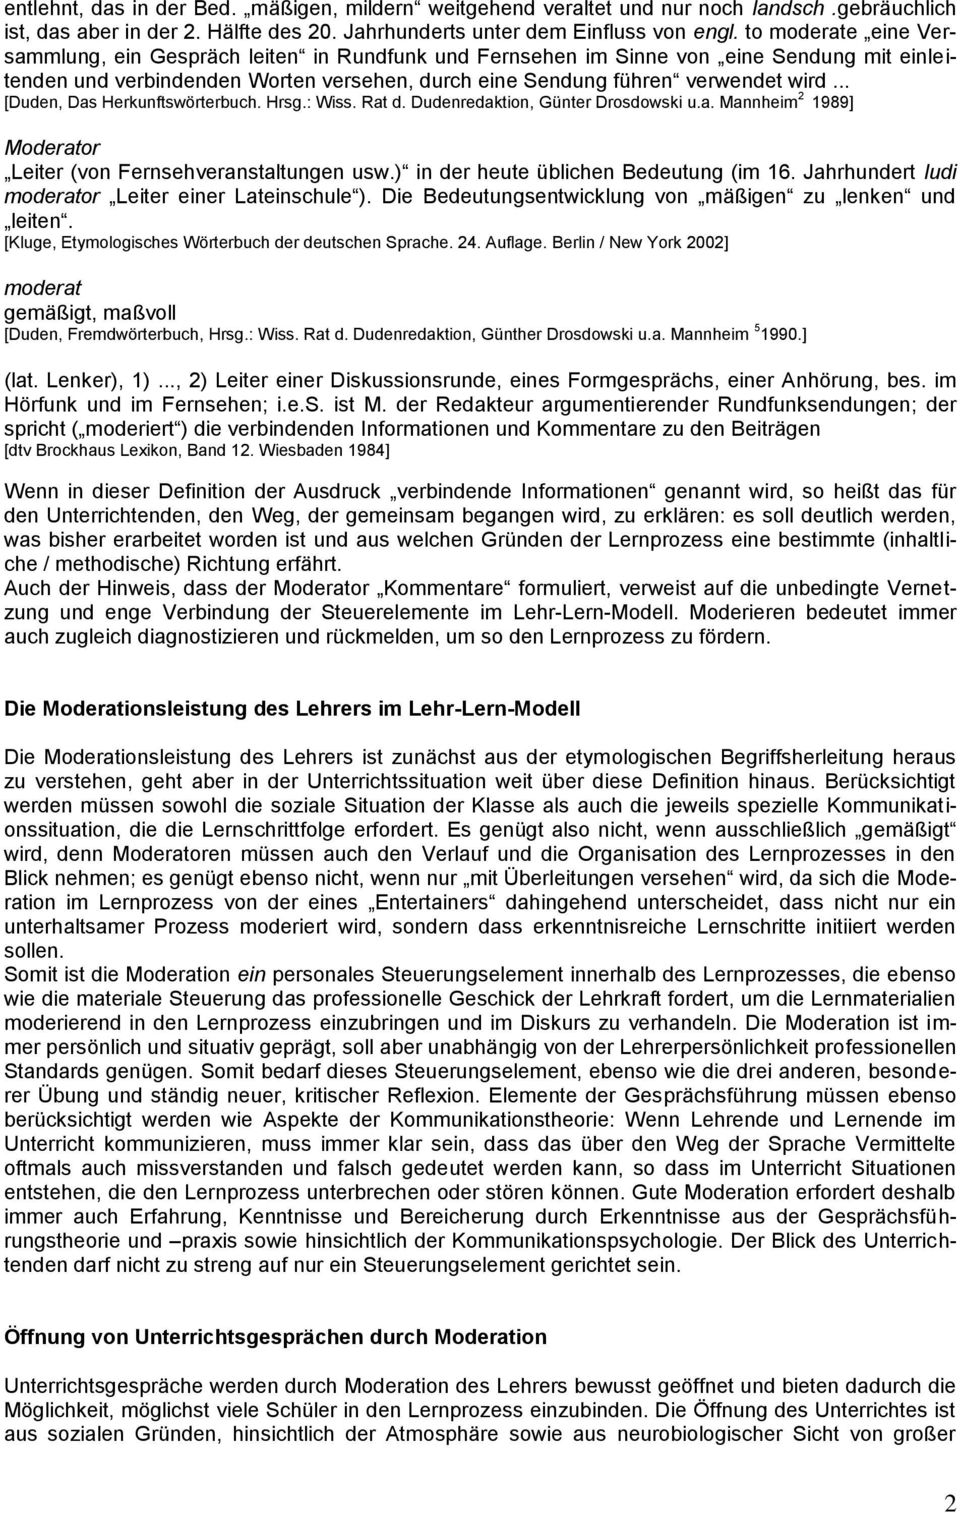 .. [Duden, Das Herkunftswörterbuch. Hrsg.: Wiss. Rat d. Dudenredaktion, Günter Drosdowski u.a. Mannheim 2 1989] Moderator Leiter (von Fernsehveranstaltungen usw.